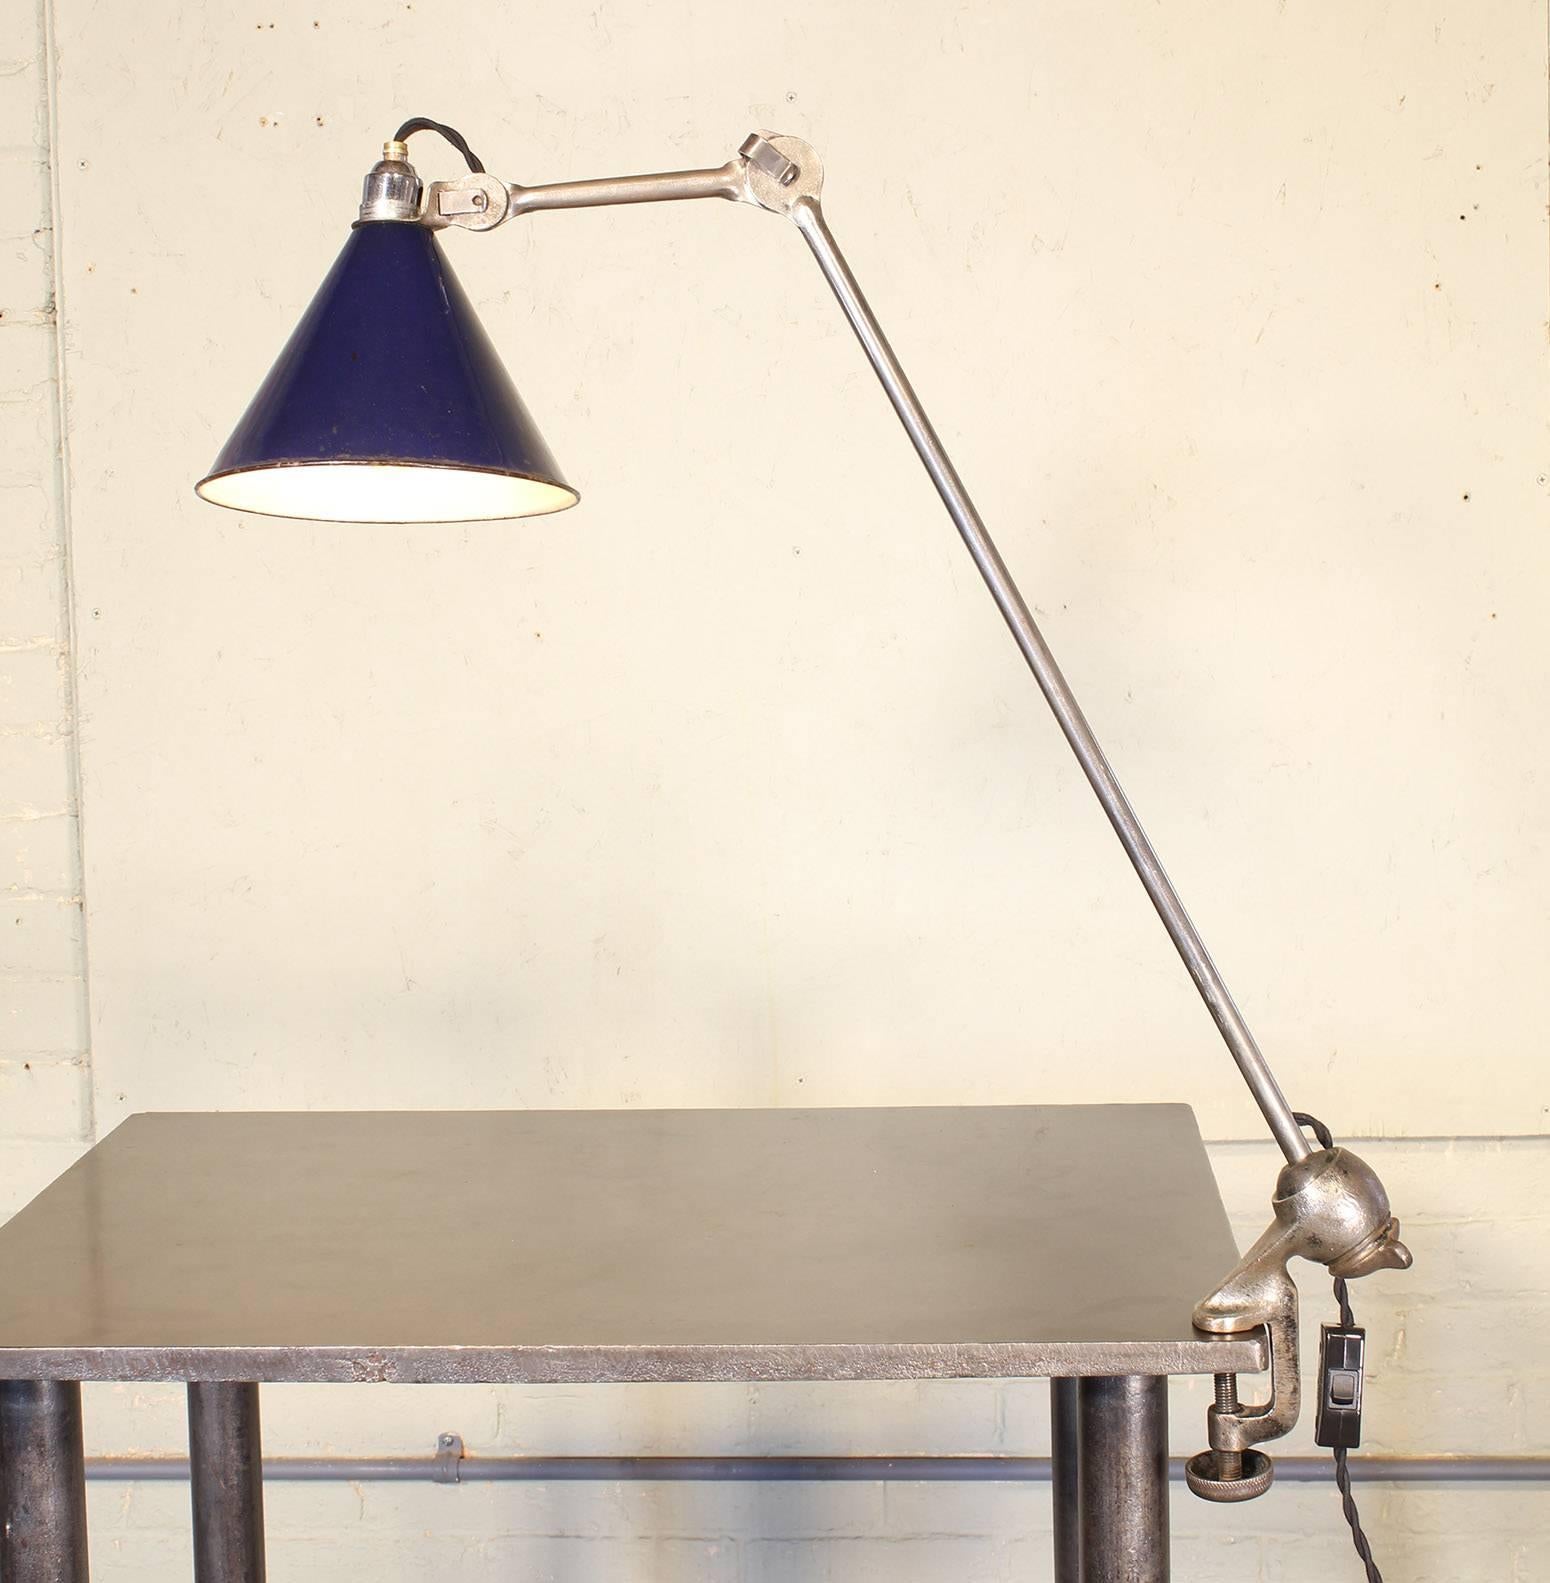 Bernard-Albin Gras No. 201 clamp-on drafting task lamp. Shade diameter measures 8